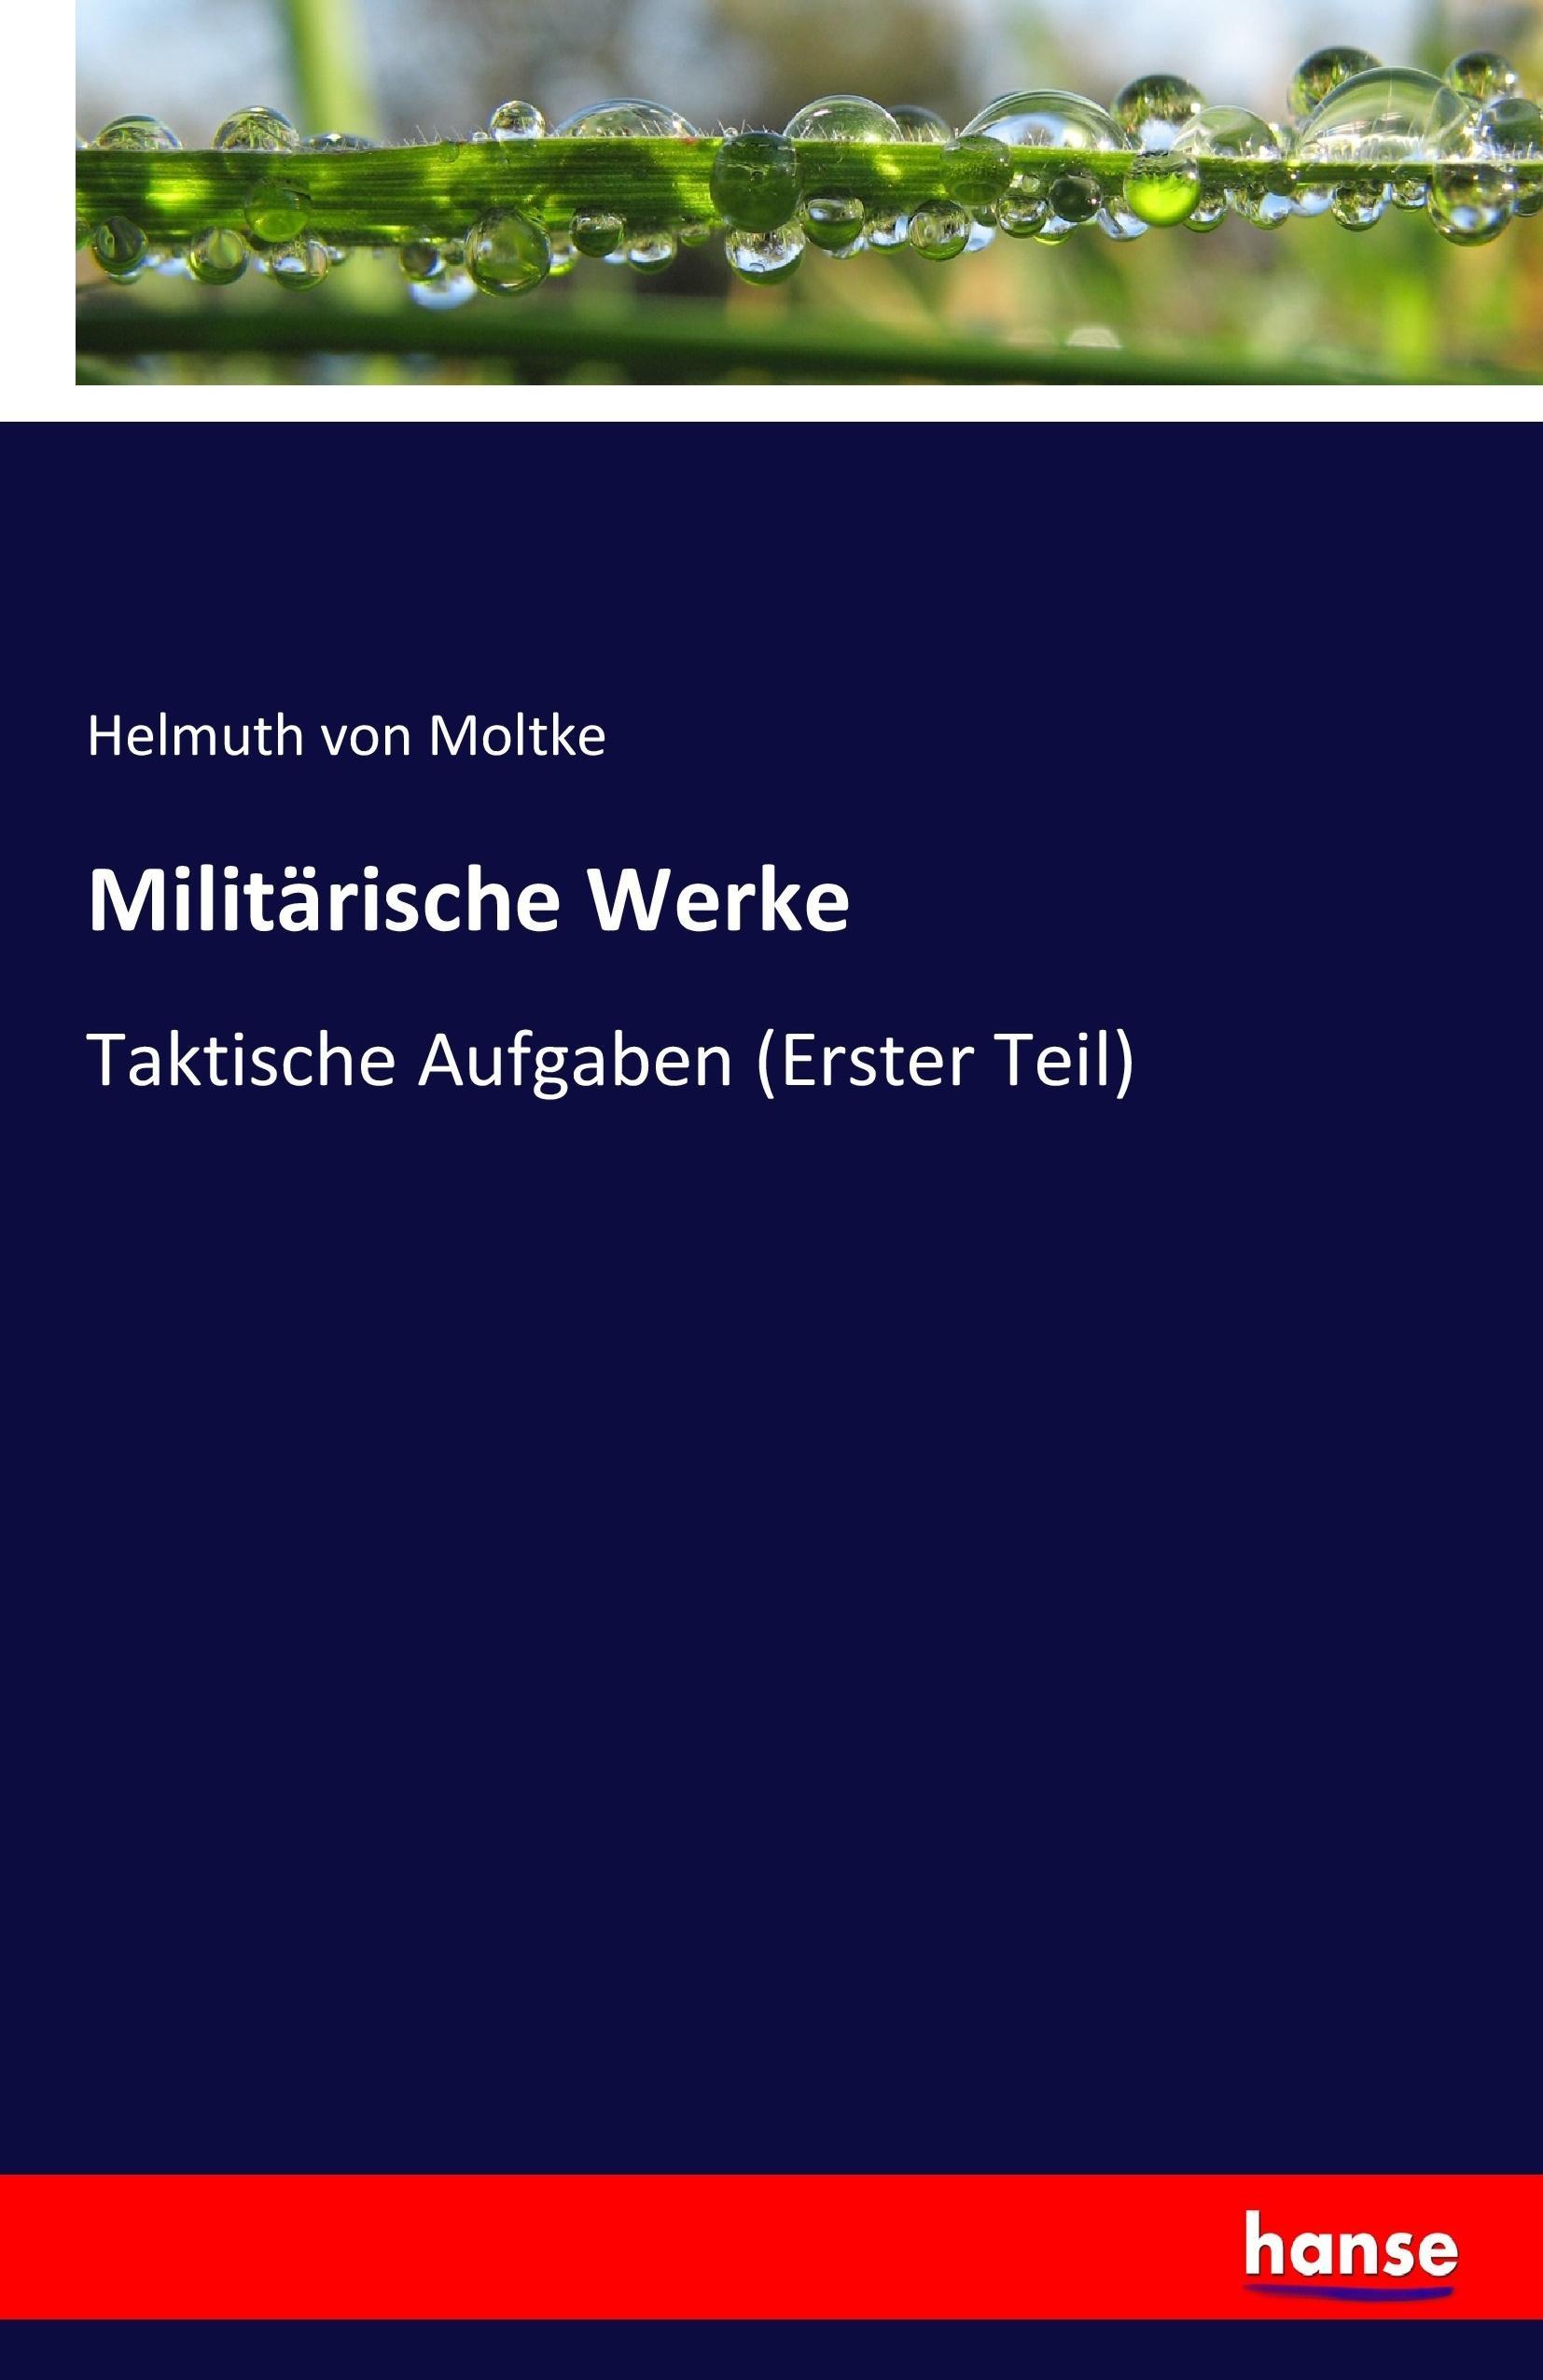 Militärische Werke | Taktische Aufgaben (Erster Teil) | Helmuth Von Moltke | Taschenbuch | Paperback | 184 S. | Deutsch | 2017 | hansebooks | EAN 9783741110375 - Moltke, Helmuth Von